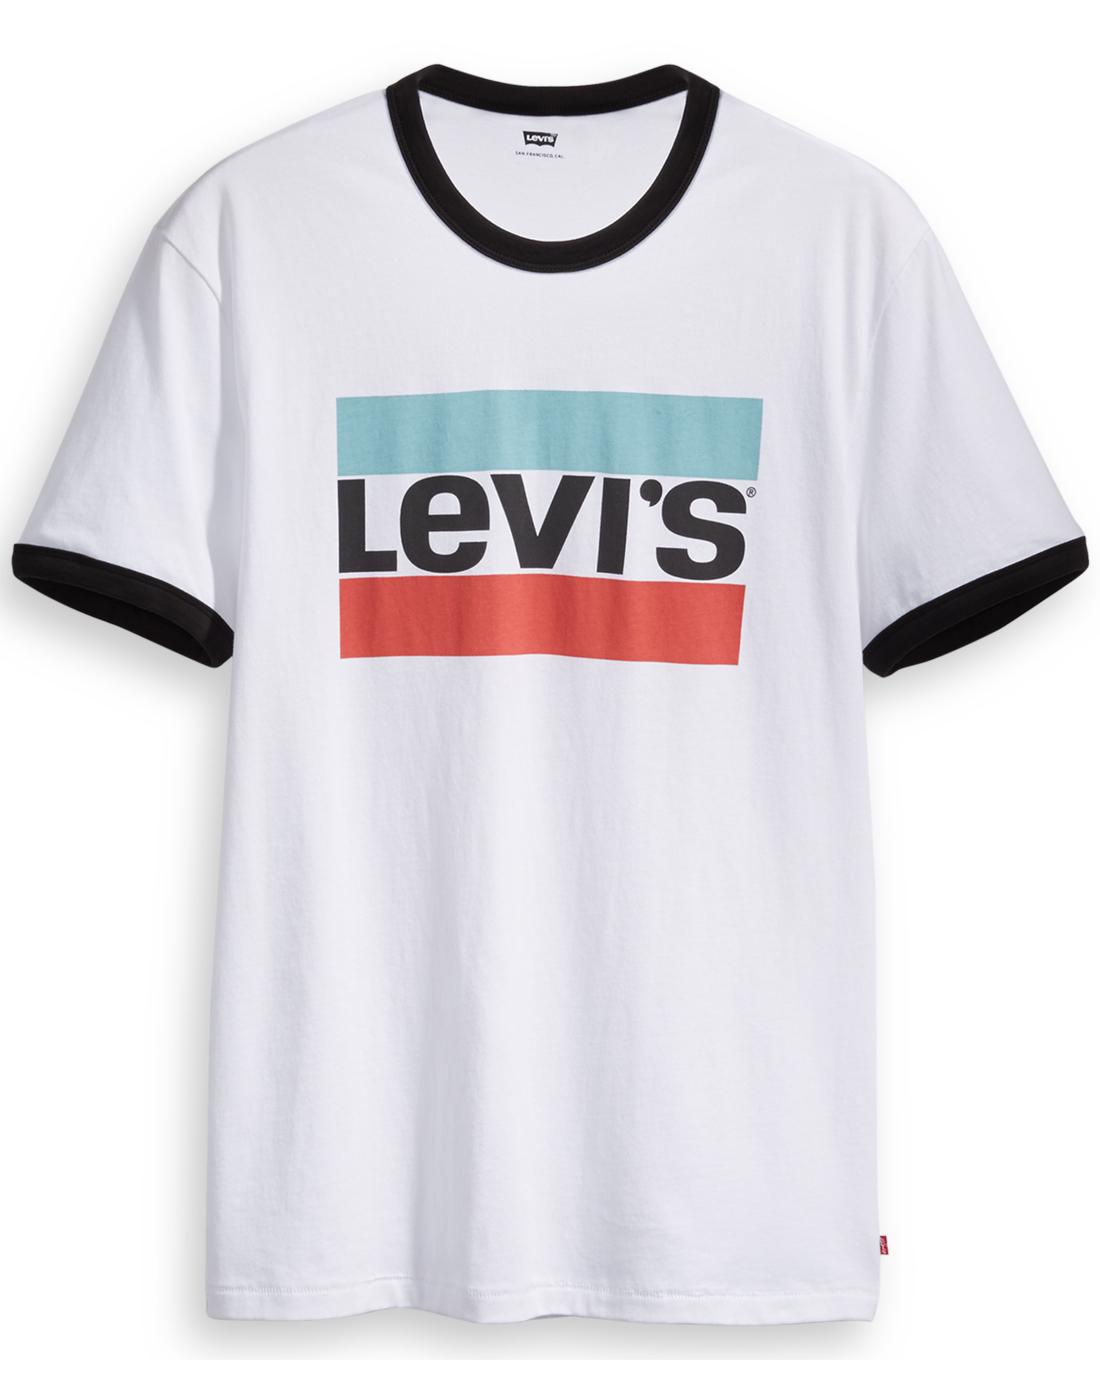 levis retro shirt